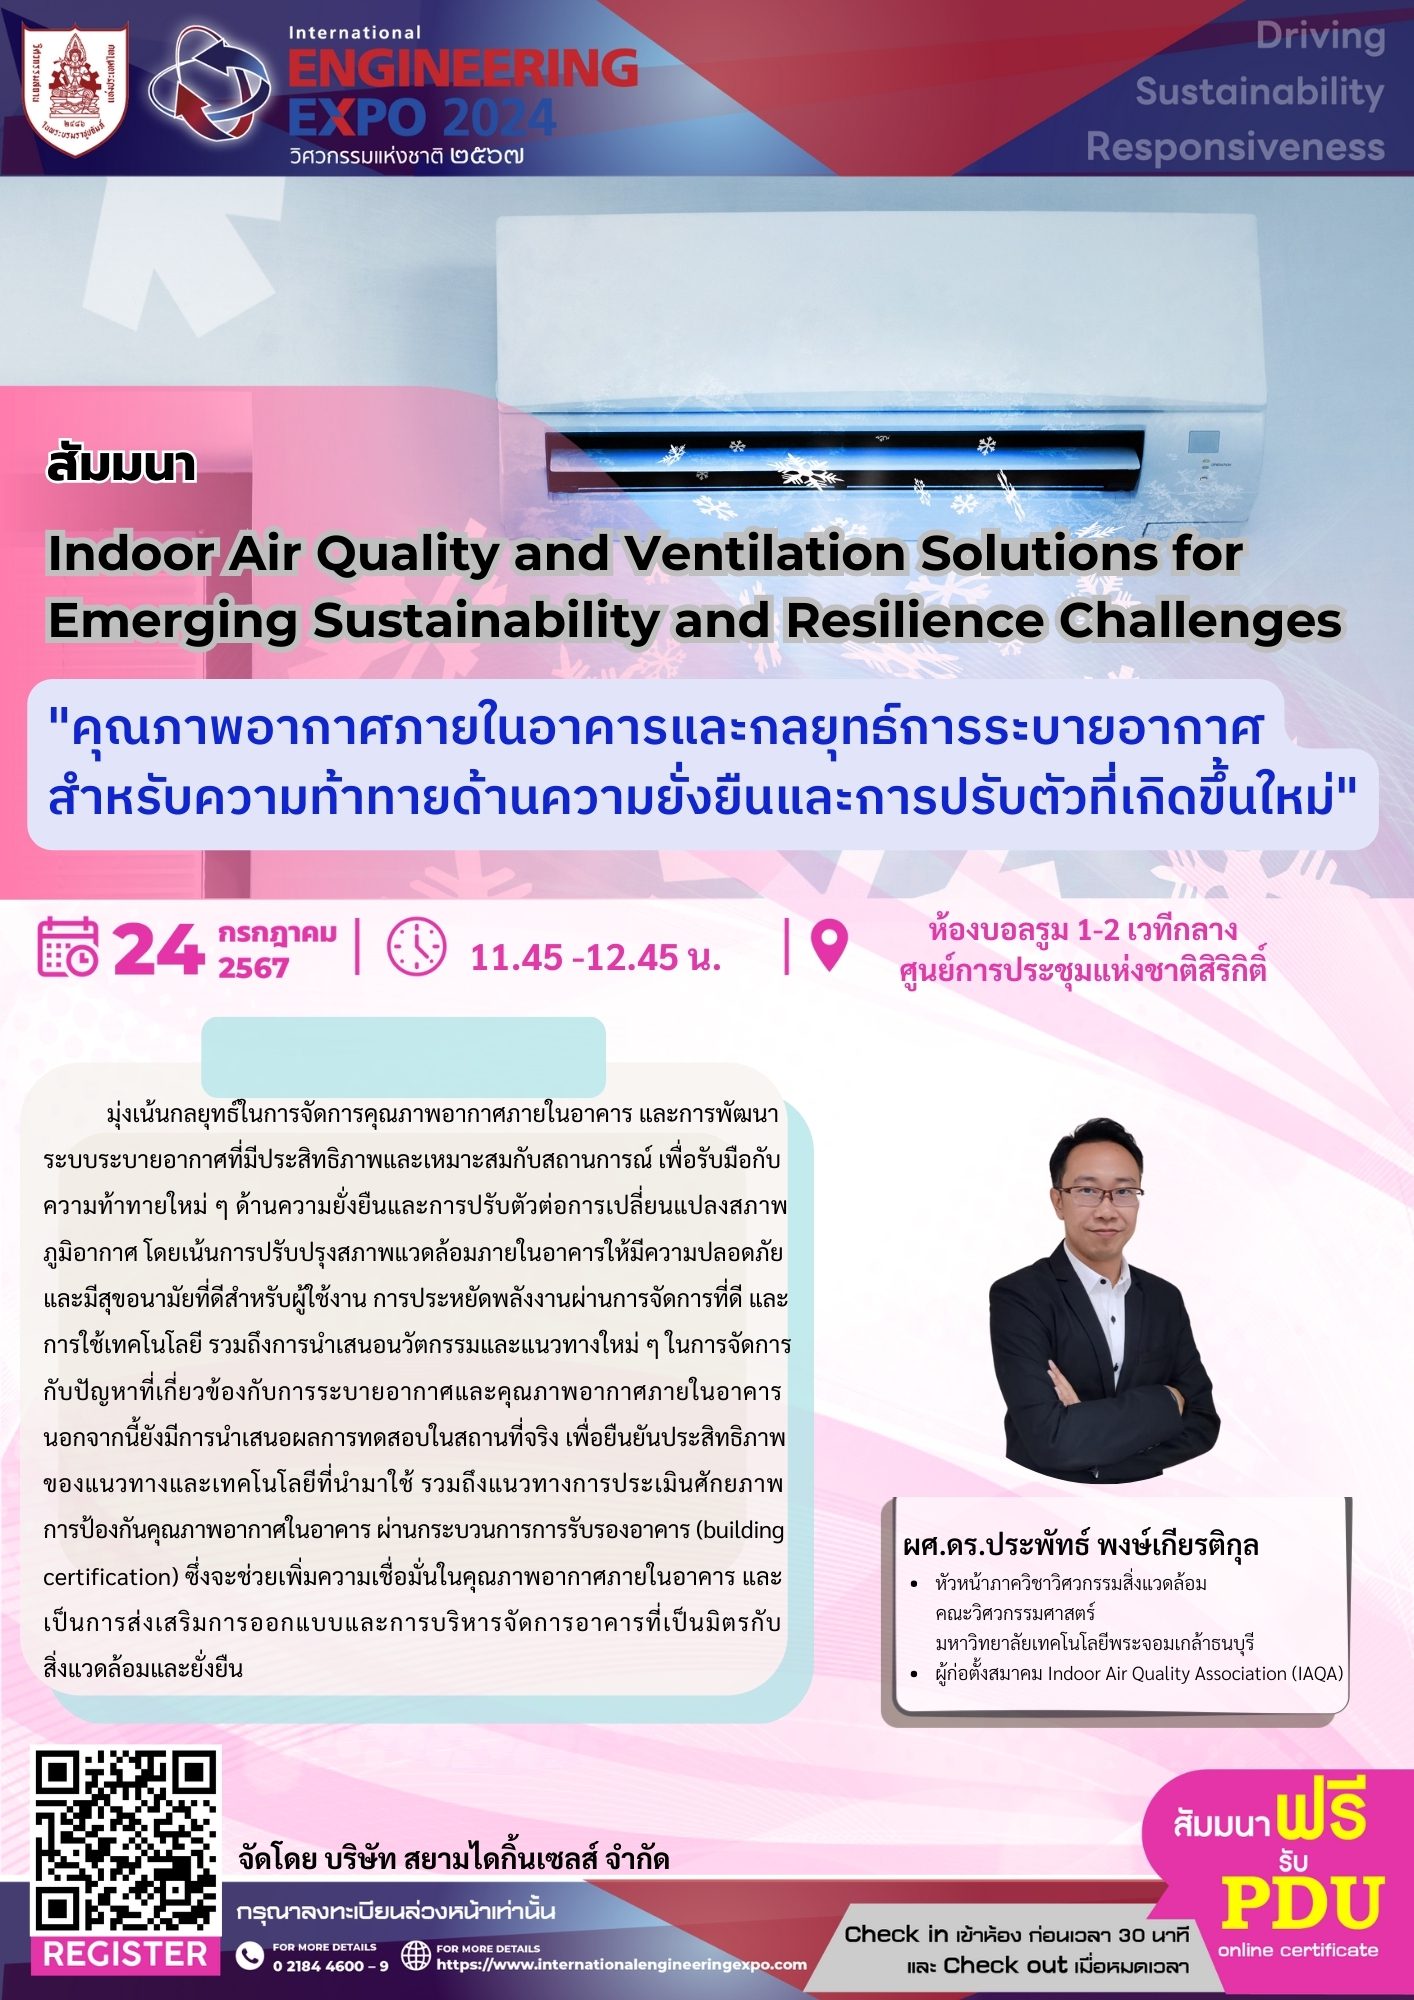 สัมมนา Indoor Air Quality and Ventilation Solutions for Emerging Sustainability and Resilience Challenges "คุณภาพอากาศภายในอาคารและกลยุทธ์การระบายอากาศสำหรับความท้าทายด้านความยั่งยืนและการปรับตัวที่เกิดขึ้นใหม่"